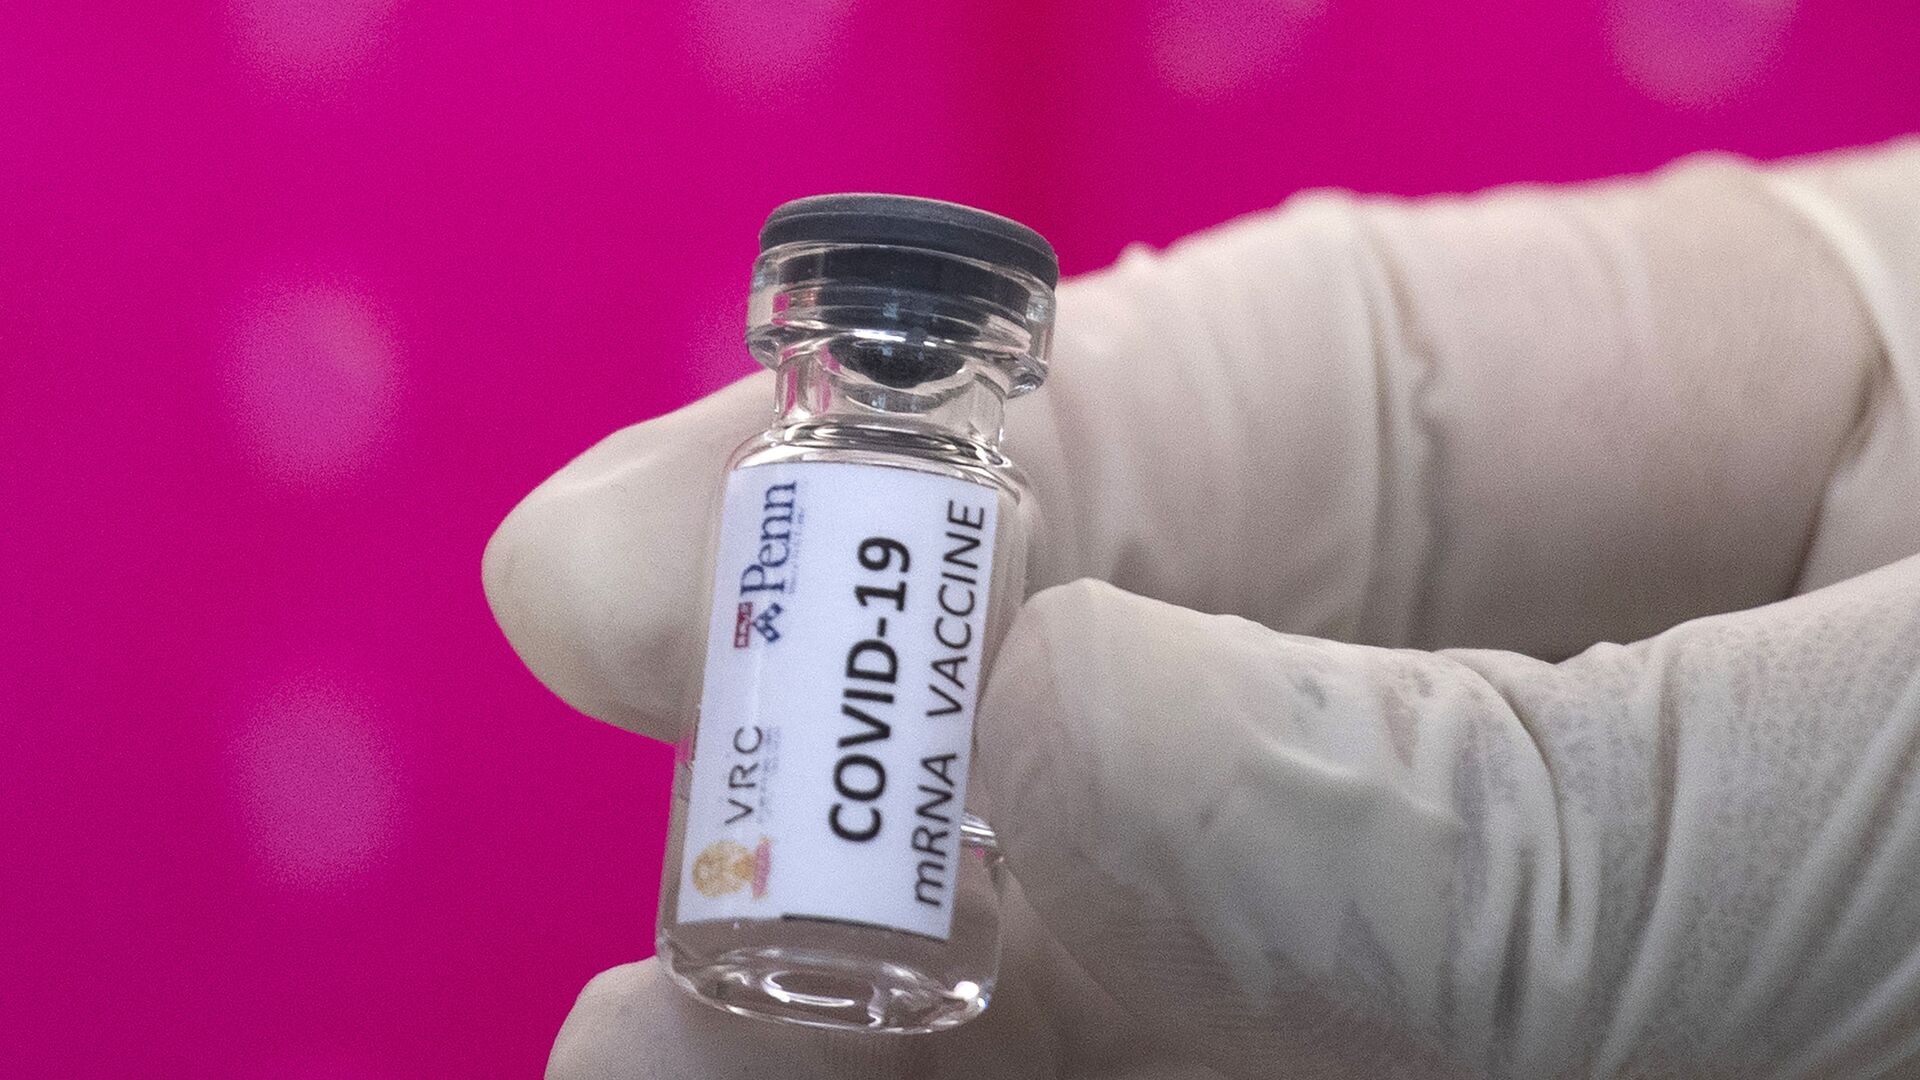 Вакцина от COVID-19 во время тестирования в исследовательском центре вакцин - Sputnik Արմենիա, 1920, 05.02.2021